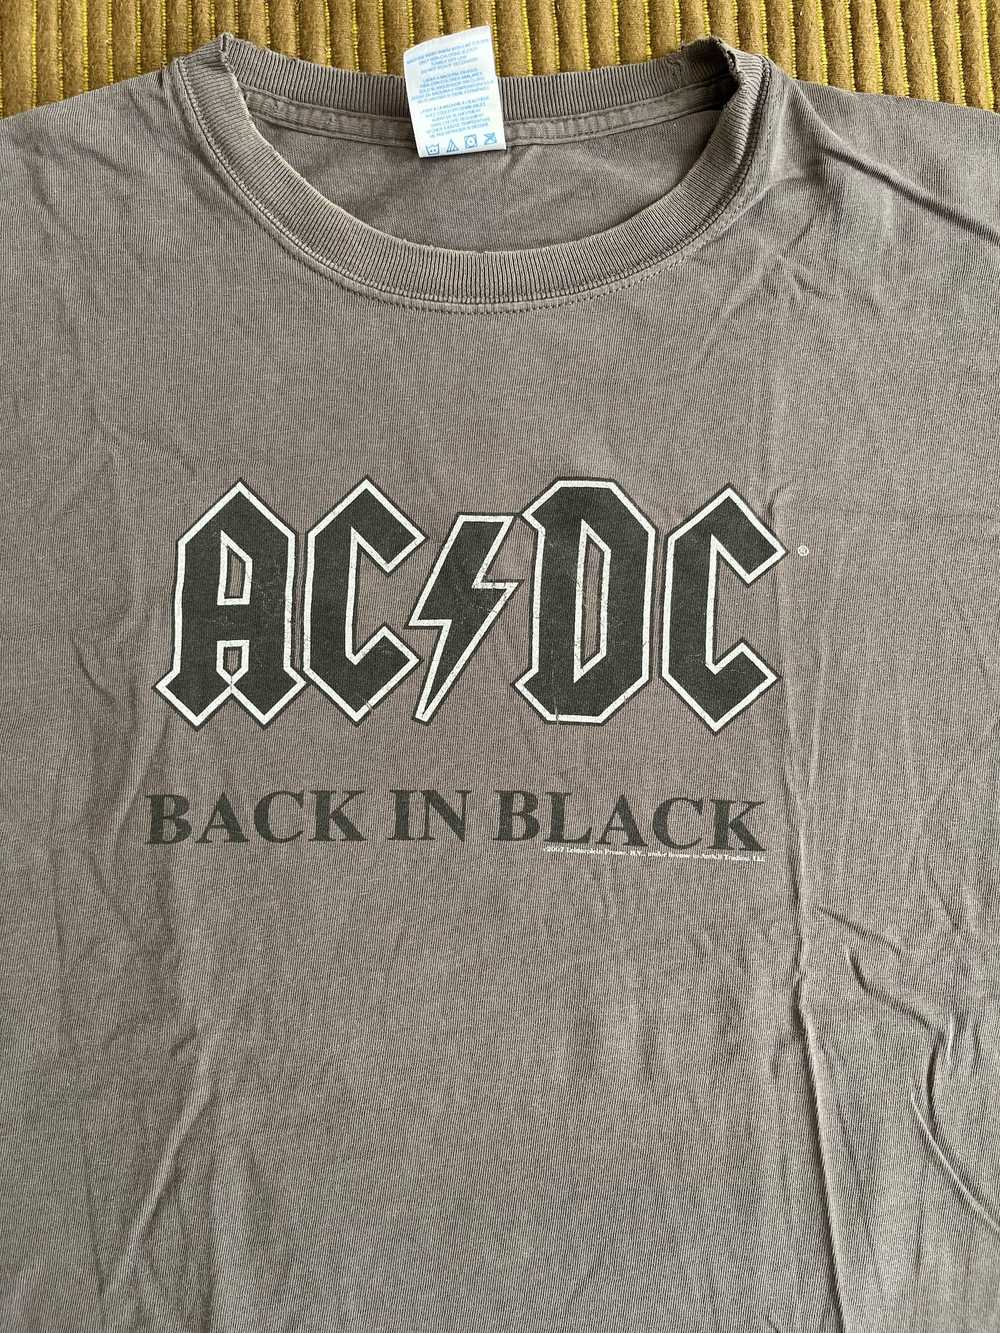 Ac/Dc Vintage AC/DC T-Shirt - image 2